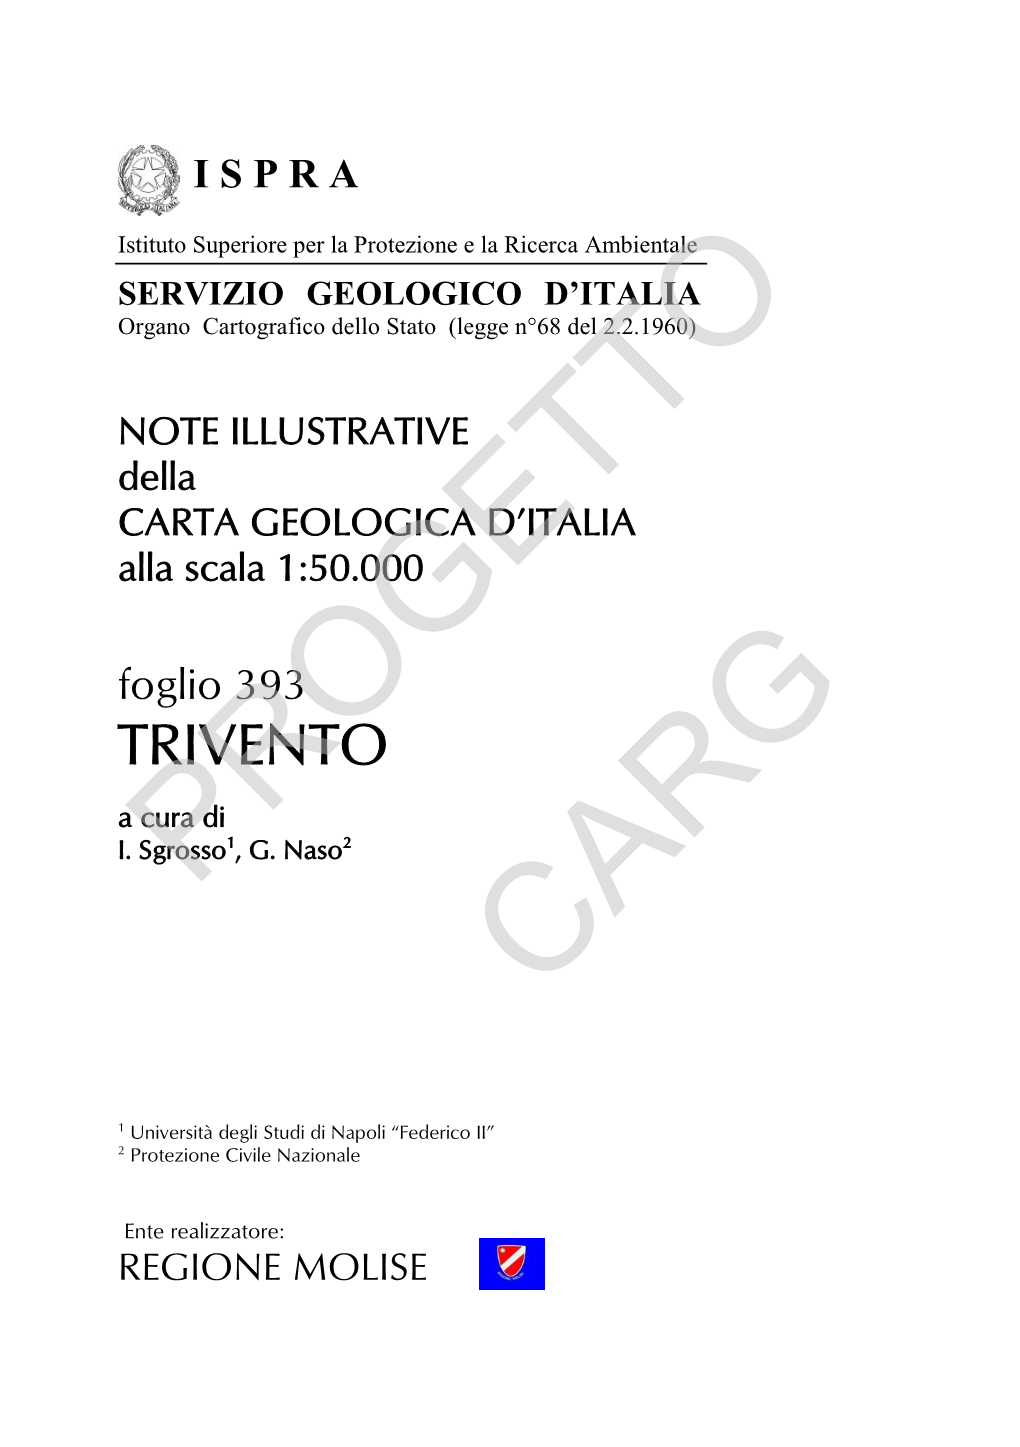 NOTE ILLUSTRATIVE Della CARTA GEOLOGICA D’ITALIA Alla Scala 1:50.000